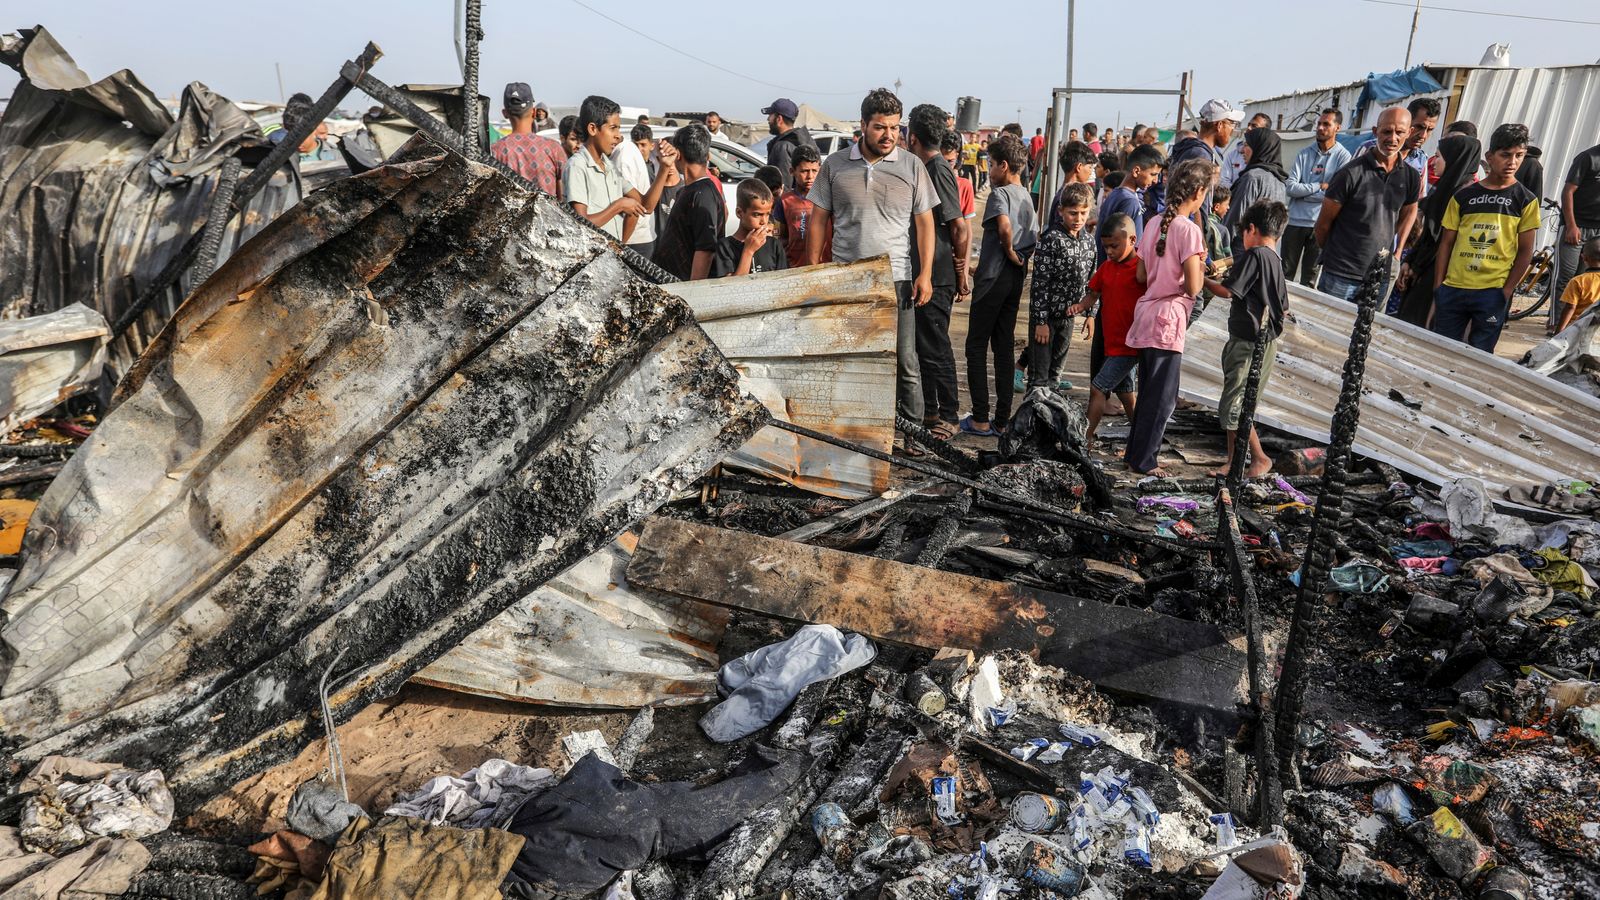 Krieg zwischen Israel und der Hamas: Rafah ist die „Hölle auf Erden“, warnt der Leiter der UN-Agentur – während Netanjahu sagt, Todesfälle bei Luftangriffen seien ein „tragischer Fehler“ gewesen |  Weltnachrichten